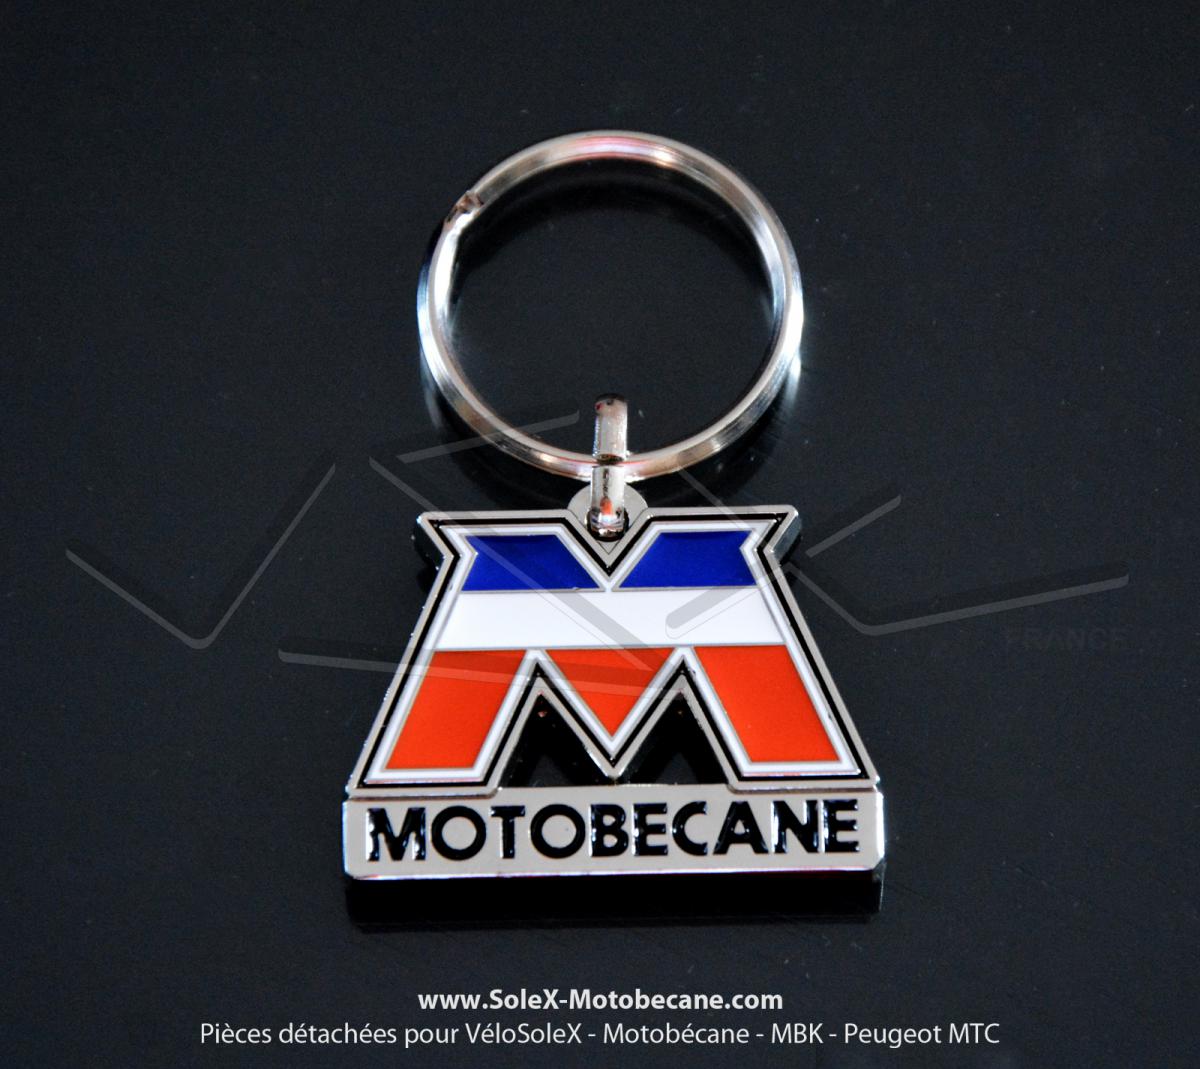 Porte-clés métal chromé "M" Motobécane Tricolore + VSX France - Accessoires  - Pièces pour Mobylette MOTOBECANE / MBK - Solex-Motobecane